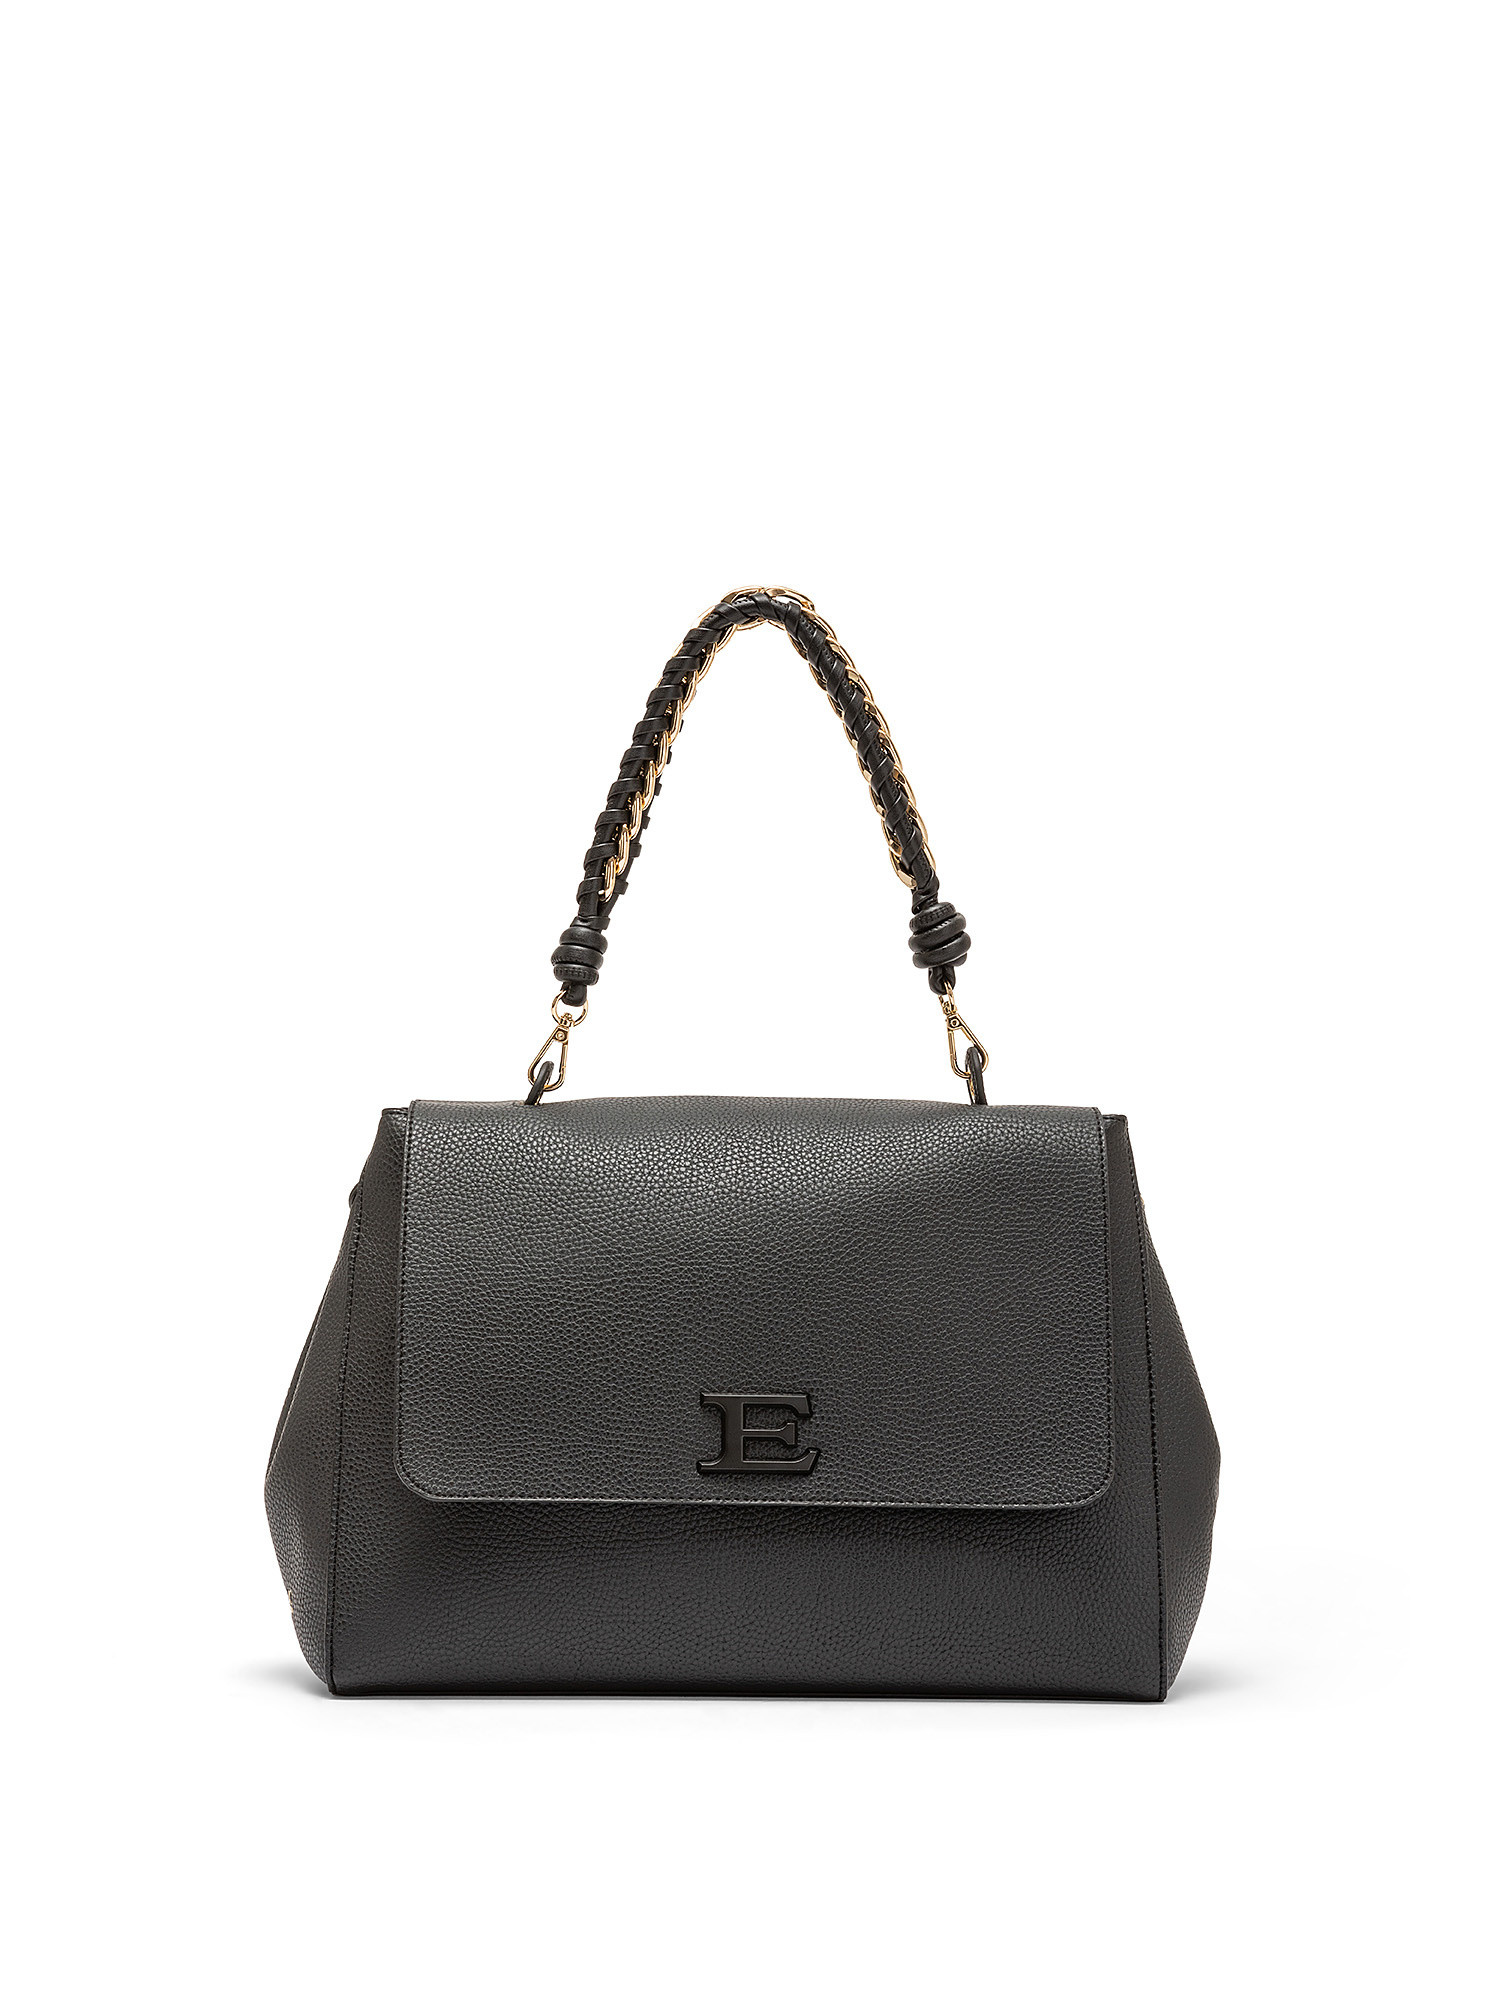 Eba Flap bag, Black, large image number 0